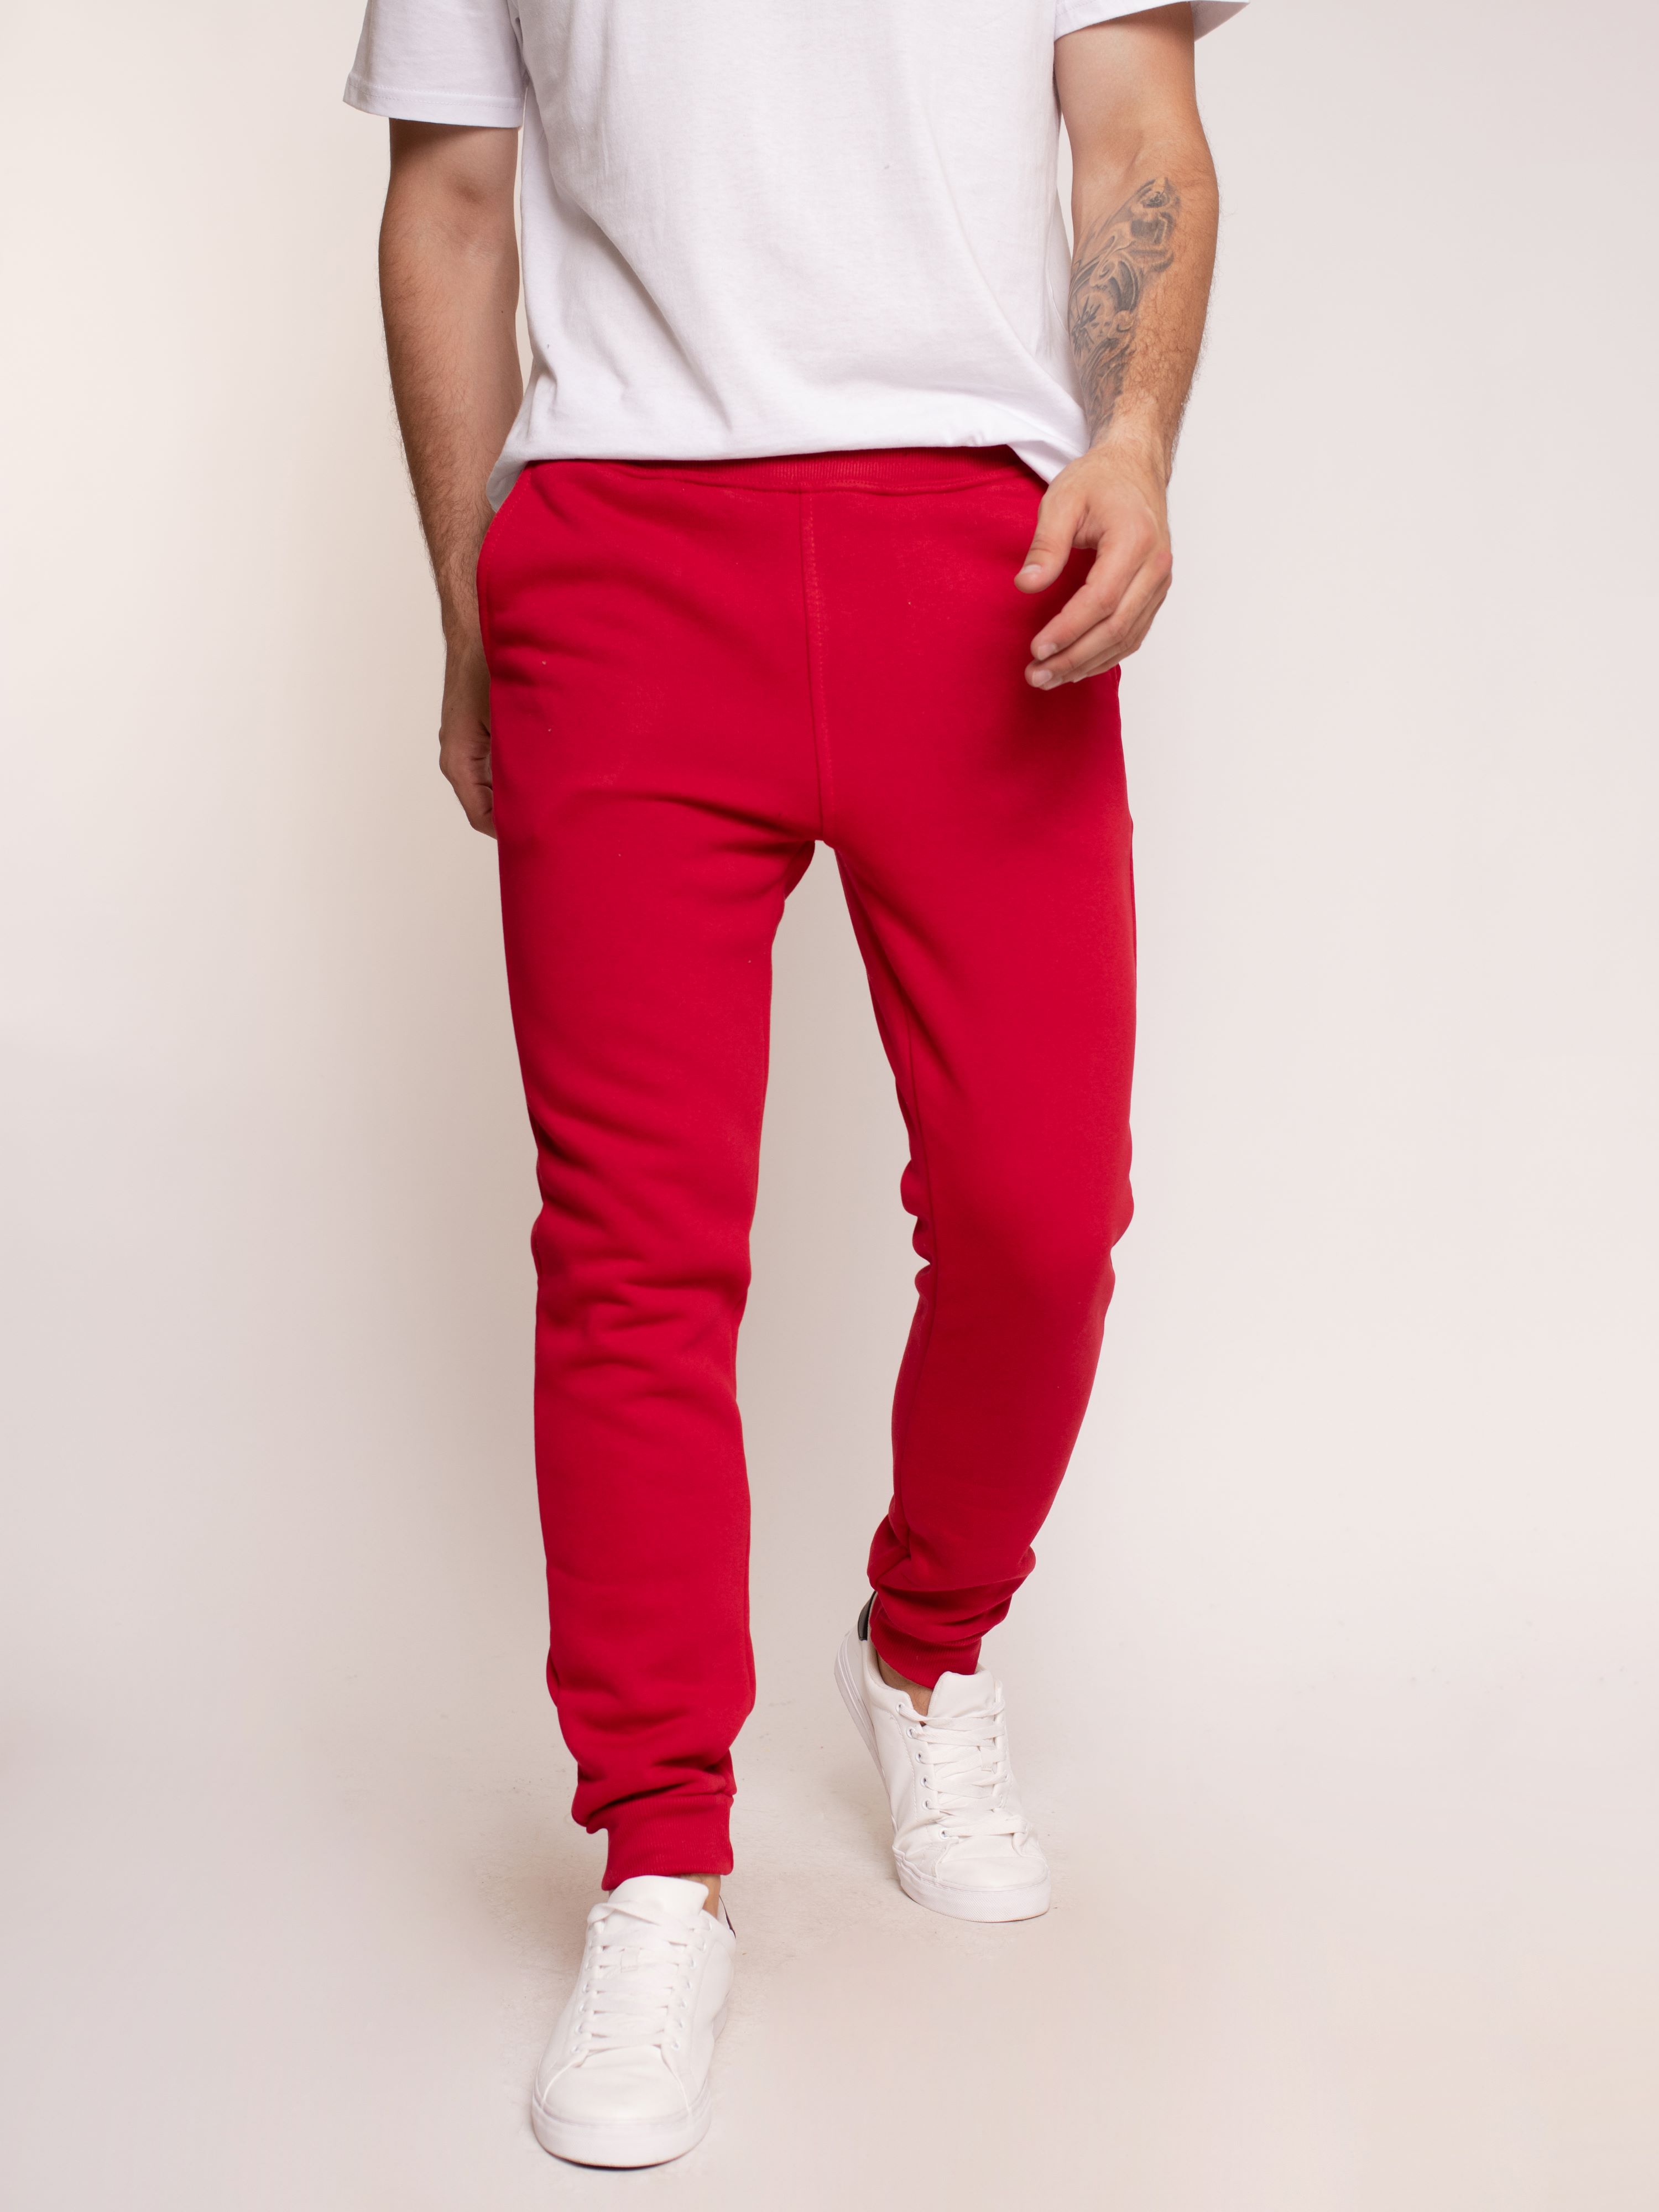 Спортивные брюки мужские Uzcotton M-SH красные L